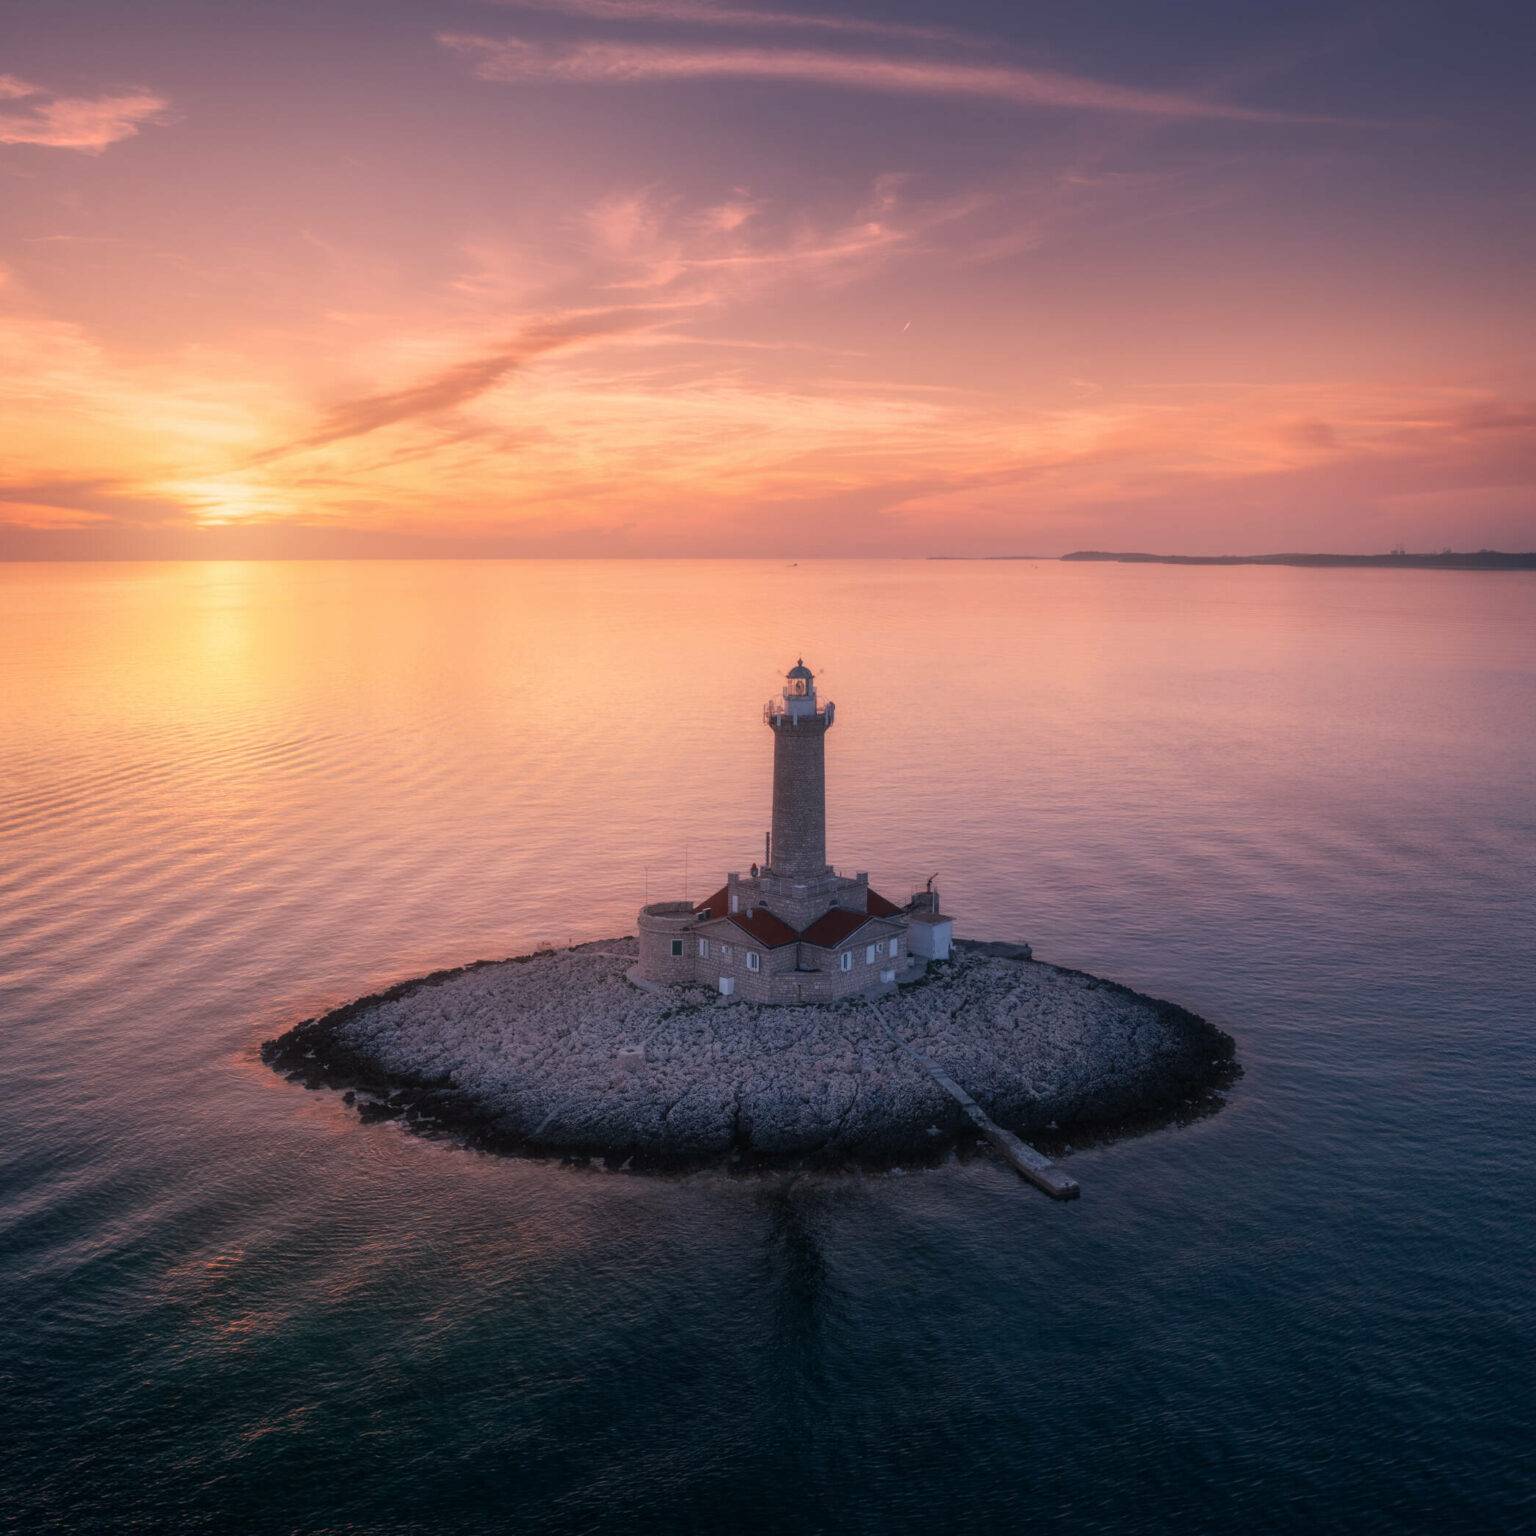 Ein alter Leuchtturm auf einer kleinen Insel in der Adria bei Pula bei Sonnenuntergang.